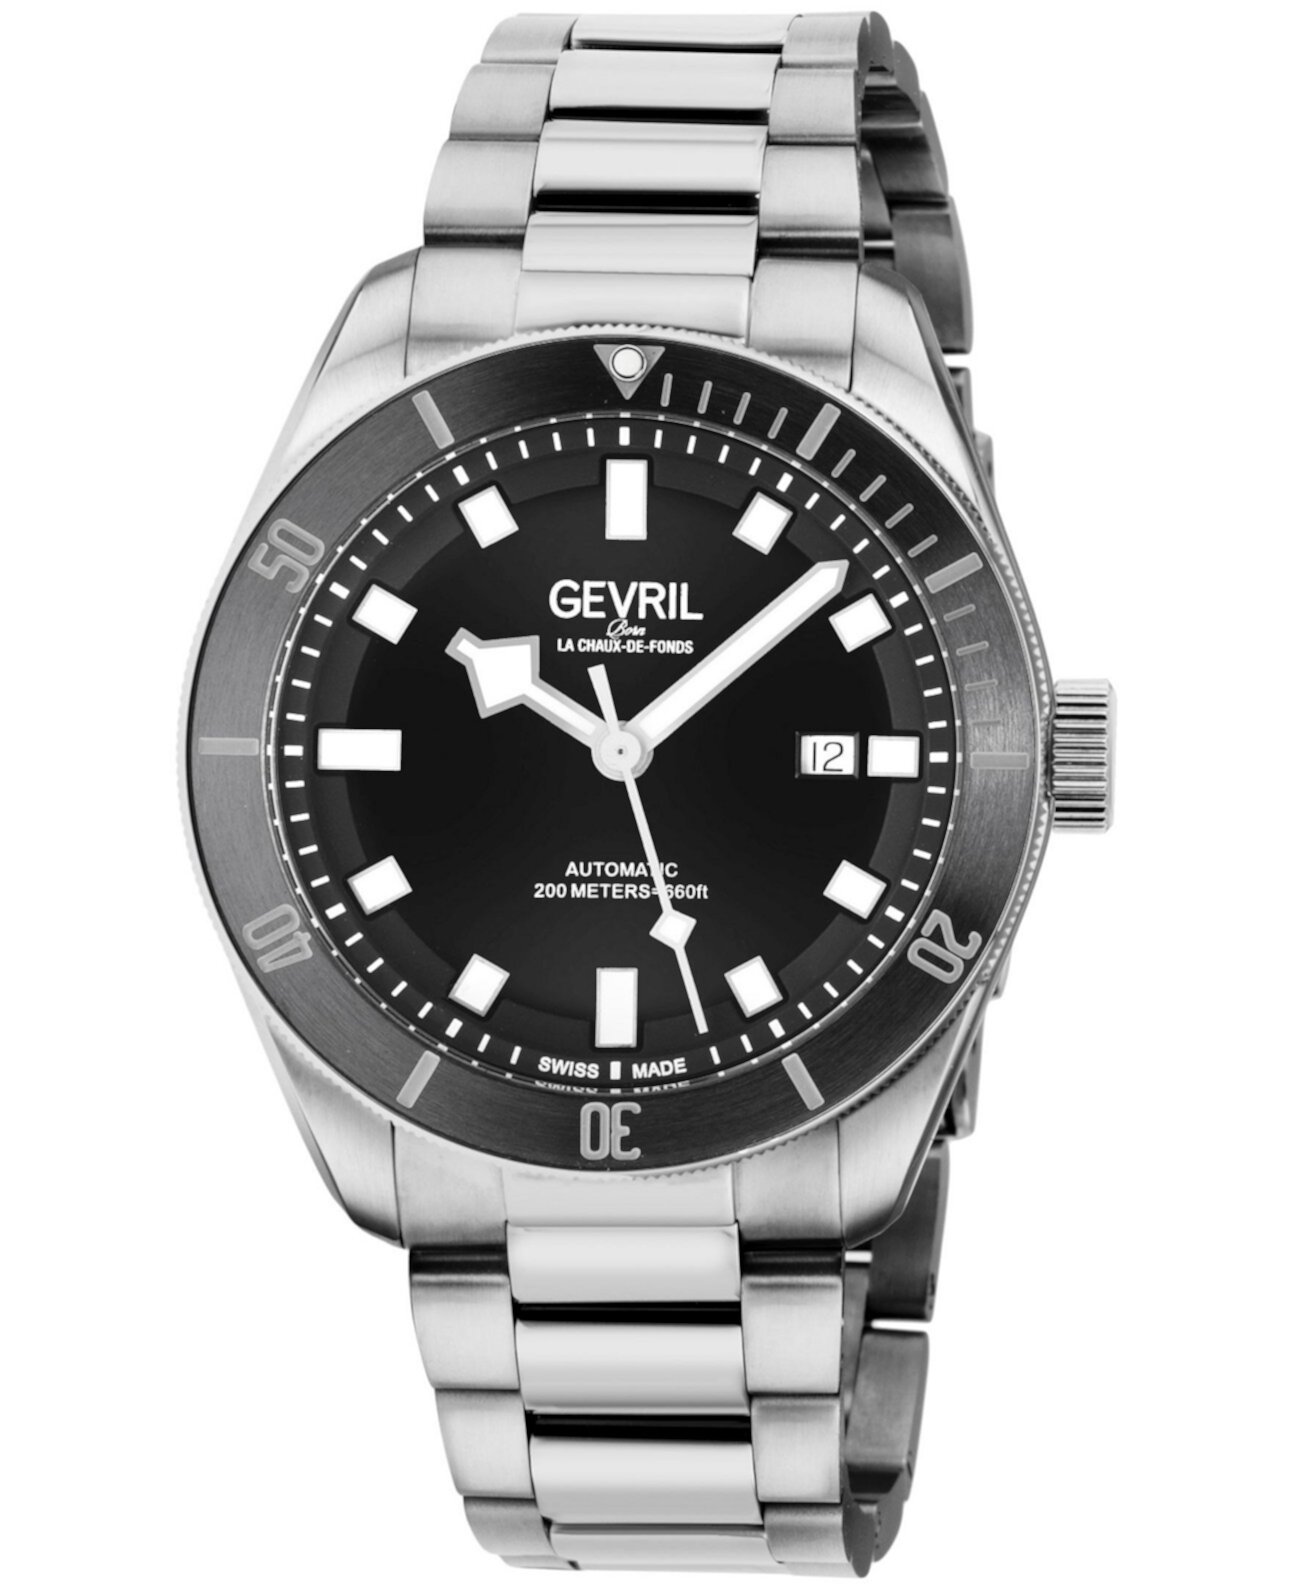 Мужские часы Yorkville Swiss Automatic серебристого цвета с браслетом из нержавеющей стали, 43 мм Gevril